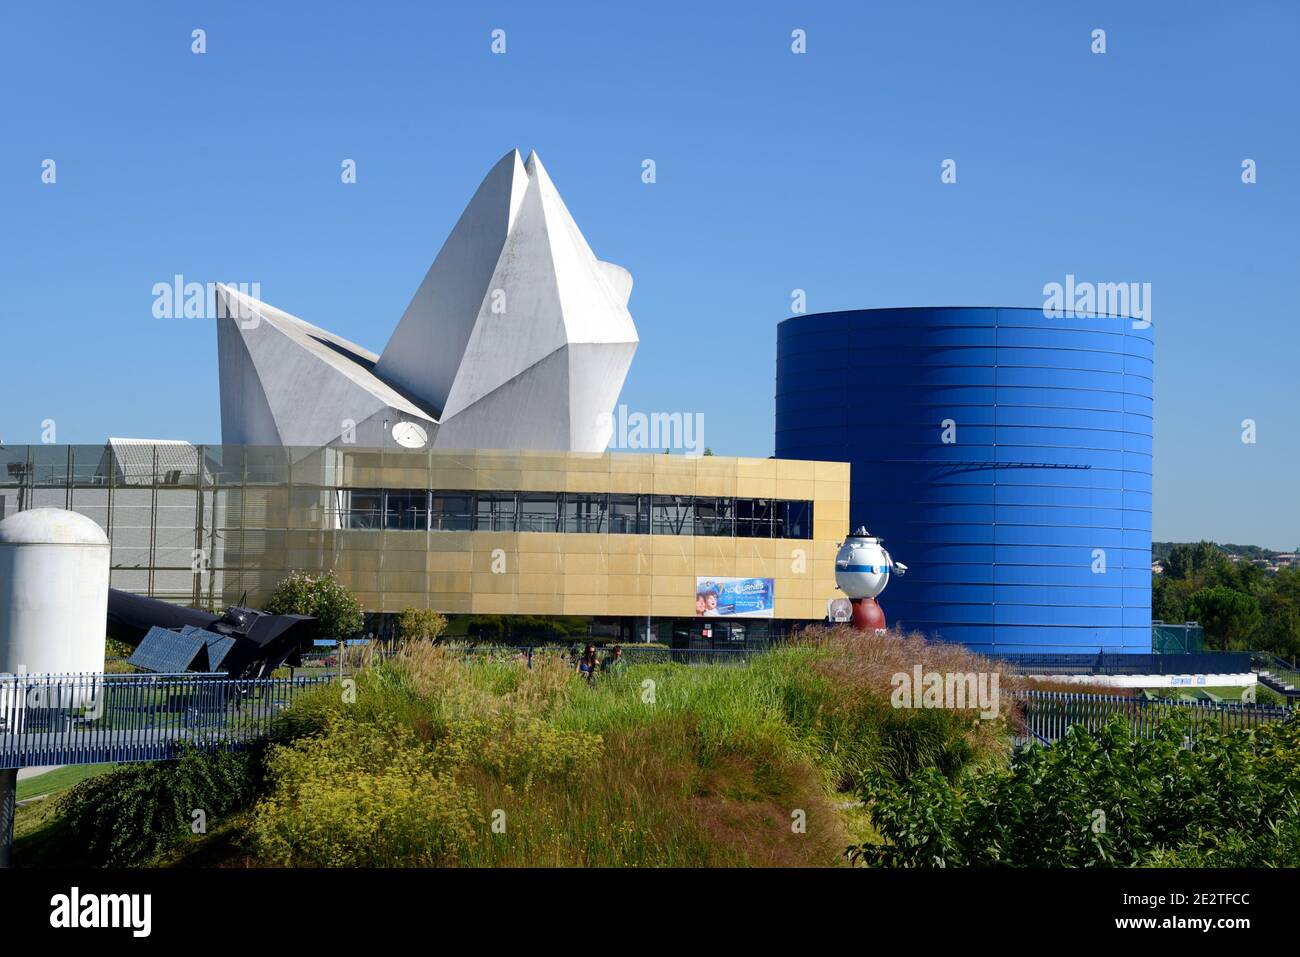 Main Exhibitio Hall & Visitor Centre of the Cité de l'Espace Space or Spaceflight Theme Park Toulouse France Stock Photo